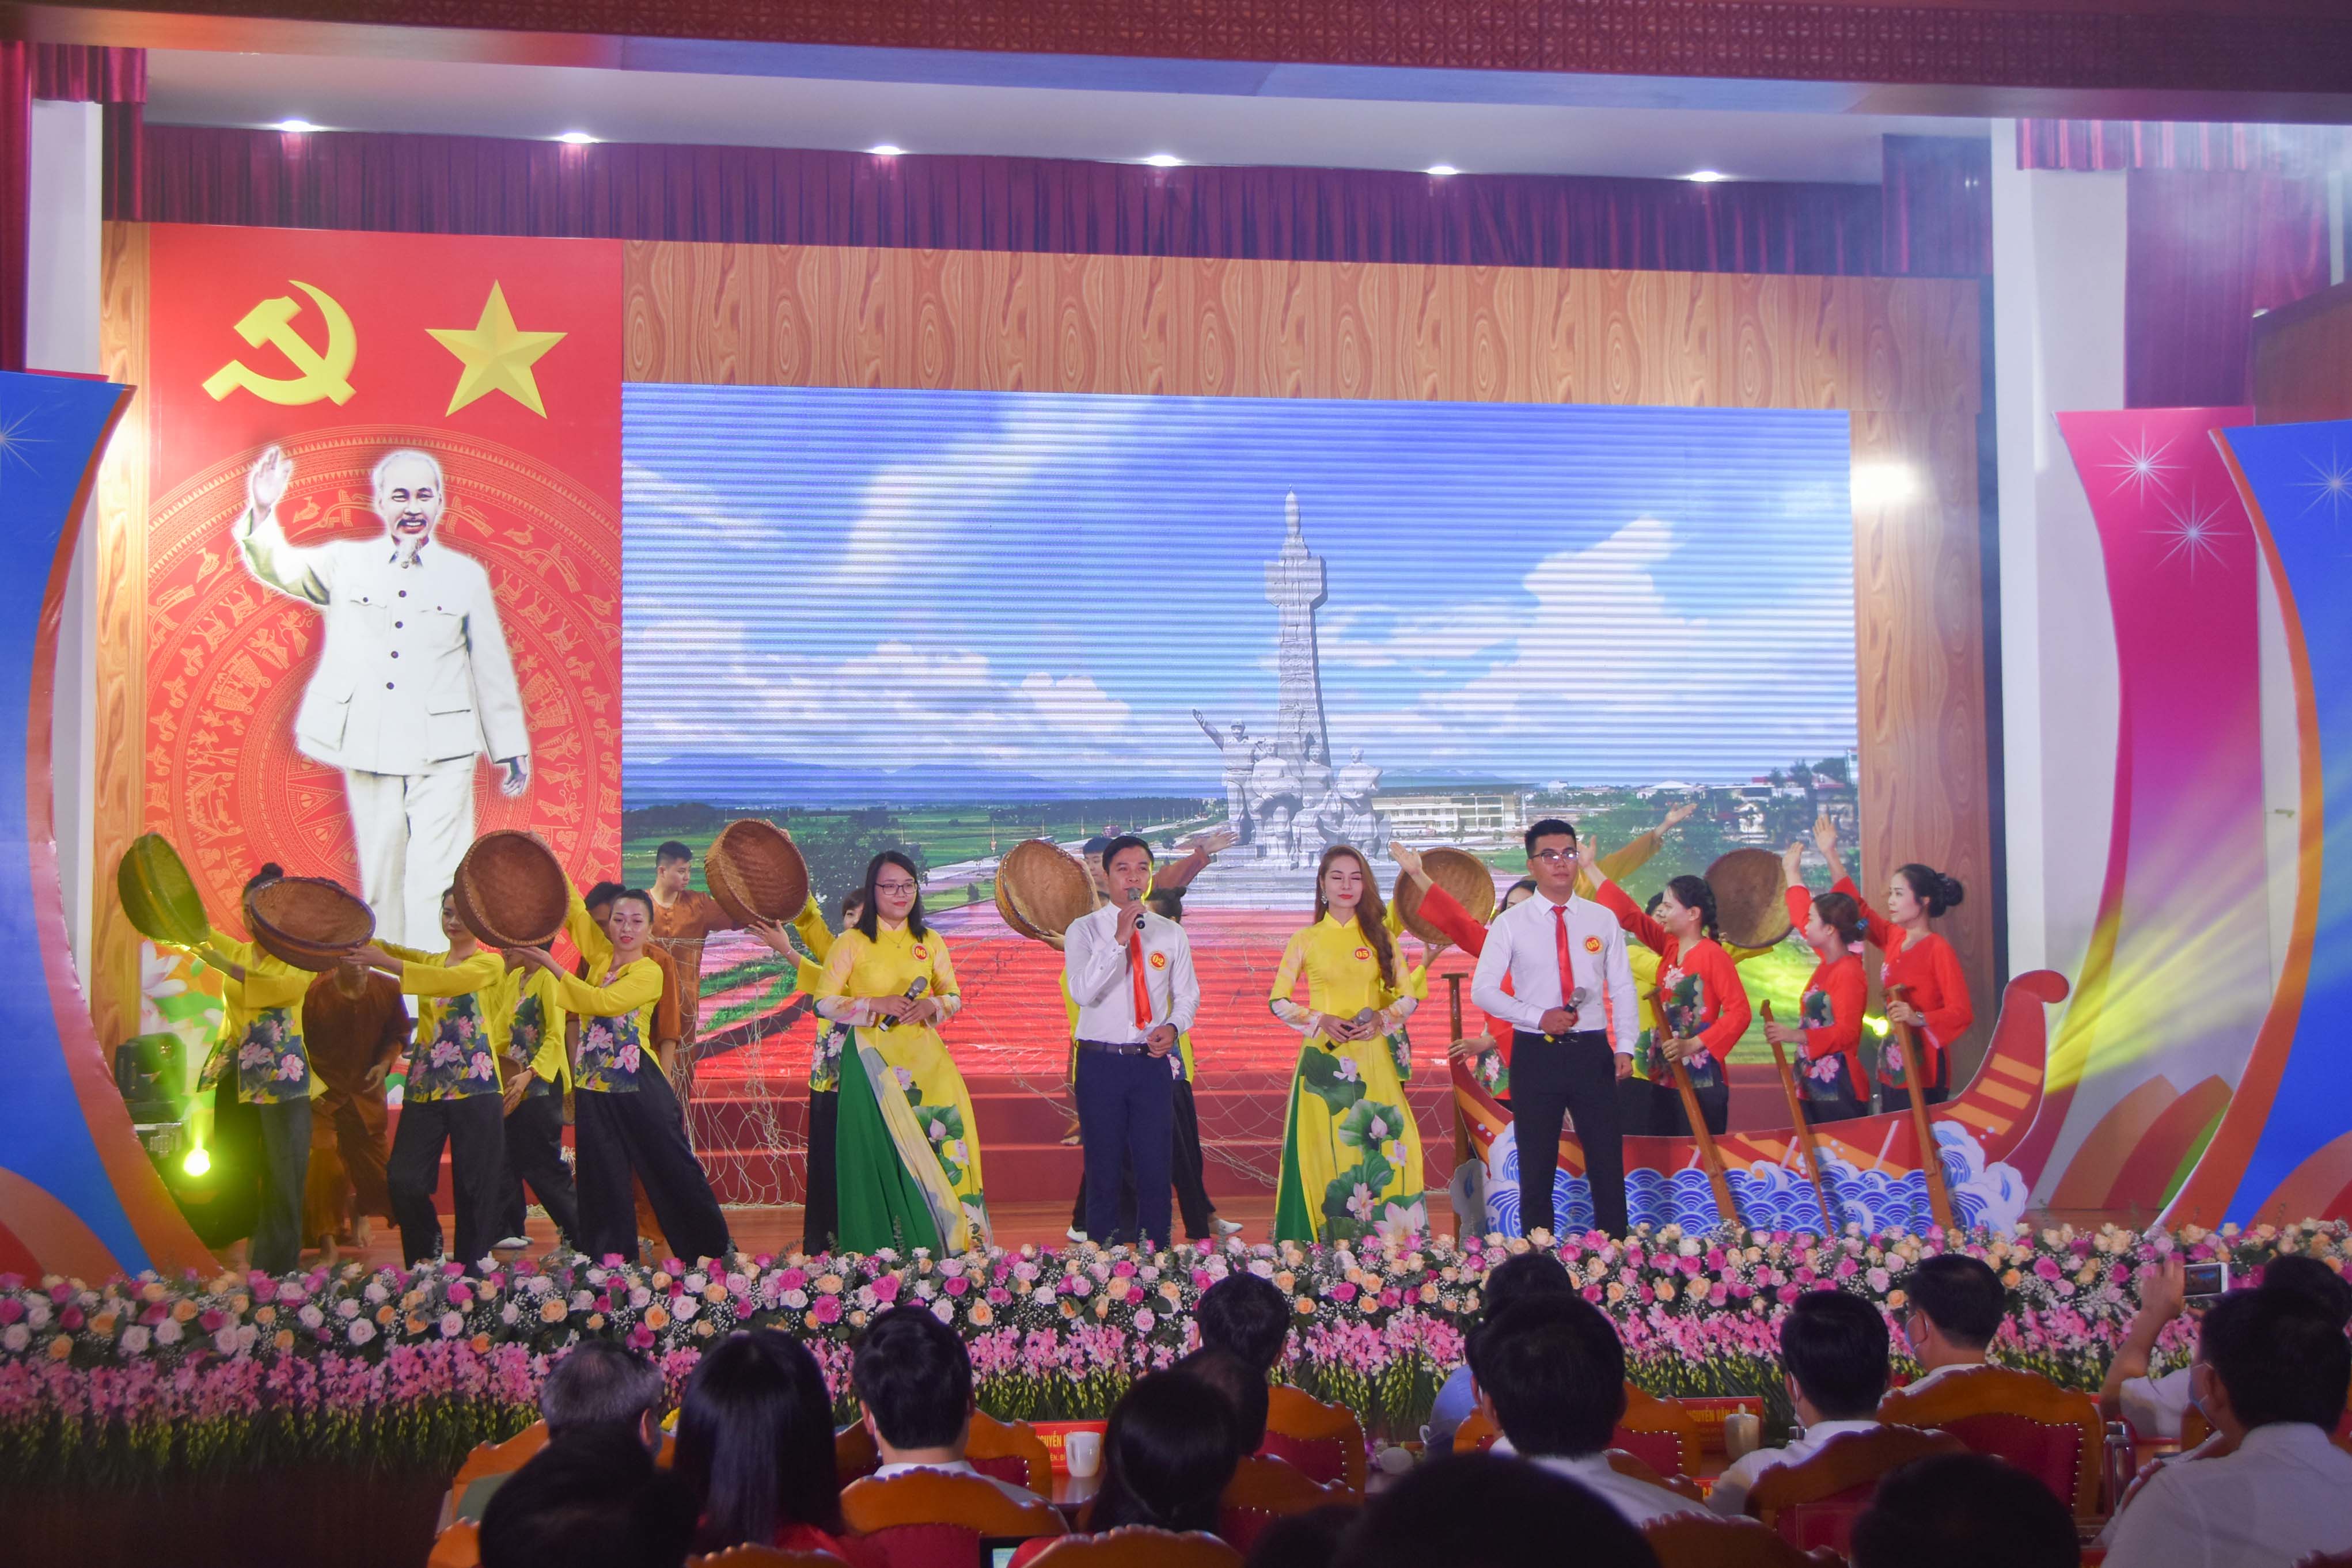 Tiết mục văn nghệ của đội TX Đông Triều tại Hội thi Dân vận khéo tỉnh Quảng Ninh năm 2020, Cụm miền Tây, tháng 9/2020.